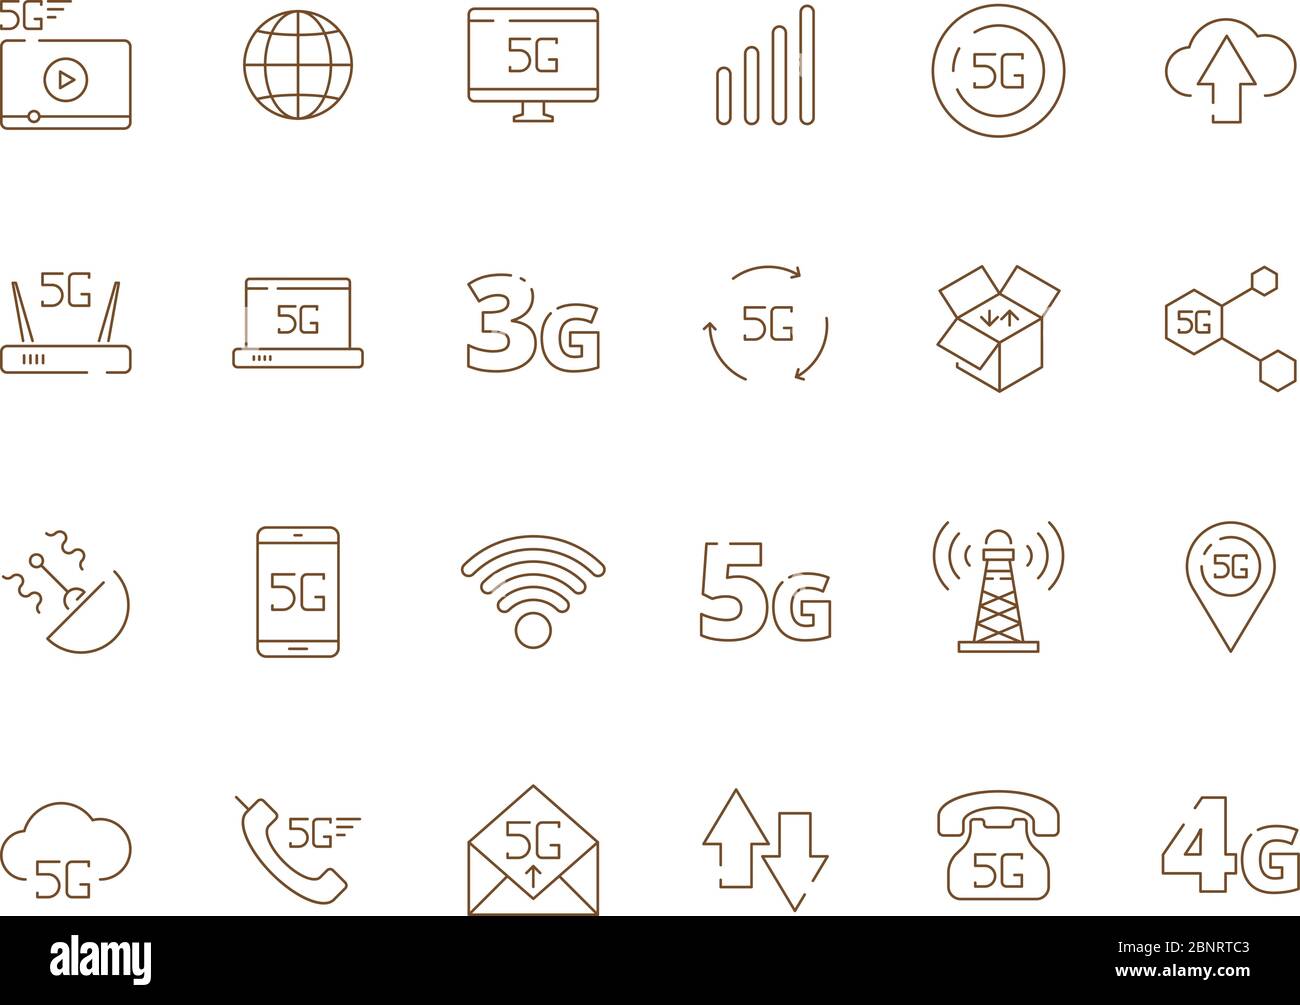 iconos de 5 g. Internet seguridad móvil inalámbrico 4g señal de telecomunicaciones nueva tecnología libre wifi símbolos vectoriales Ilustración del Vector